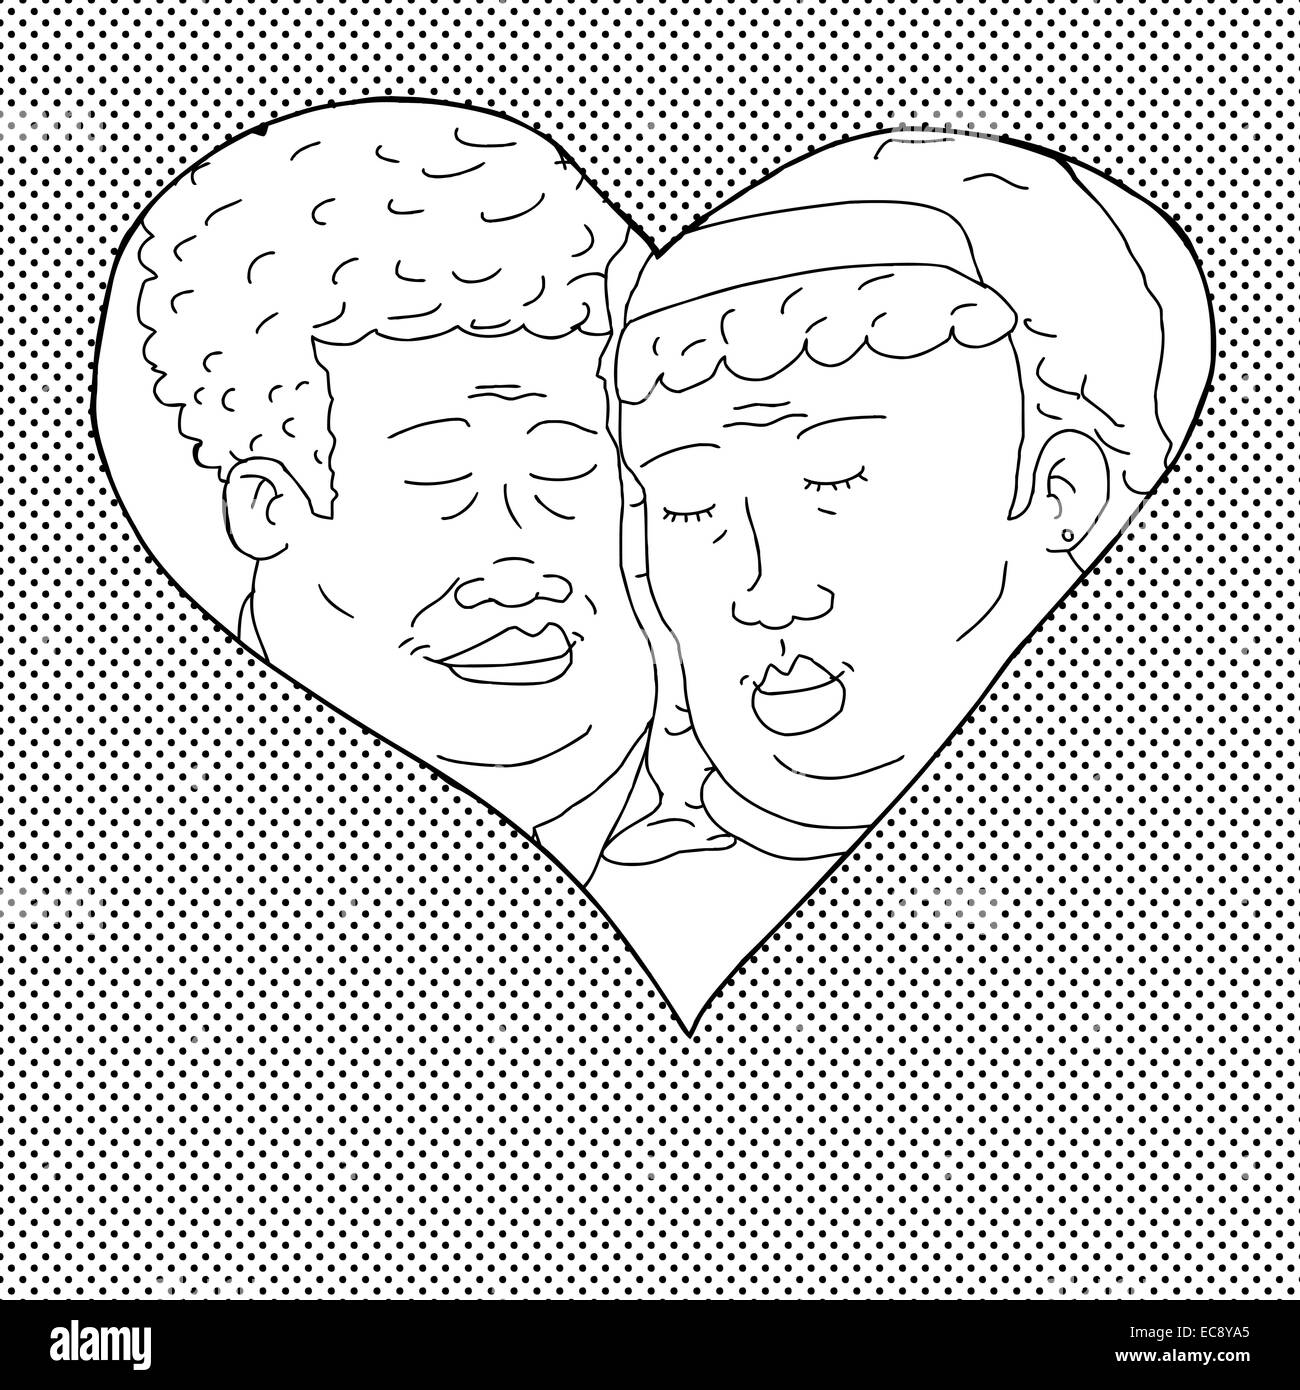 Hand drawn cartoon of happy couple in heart shape Stock Photo